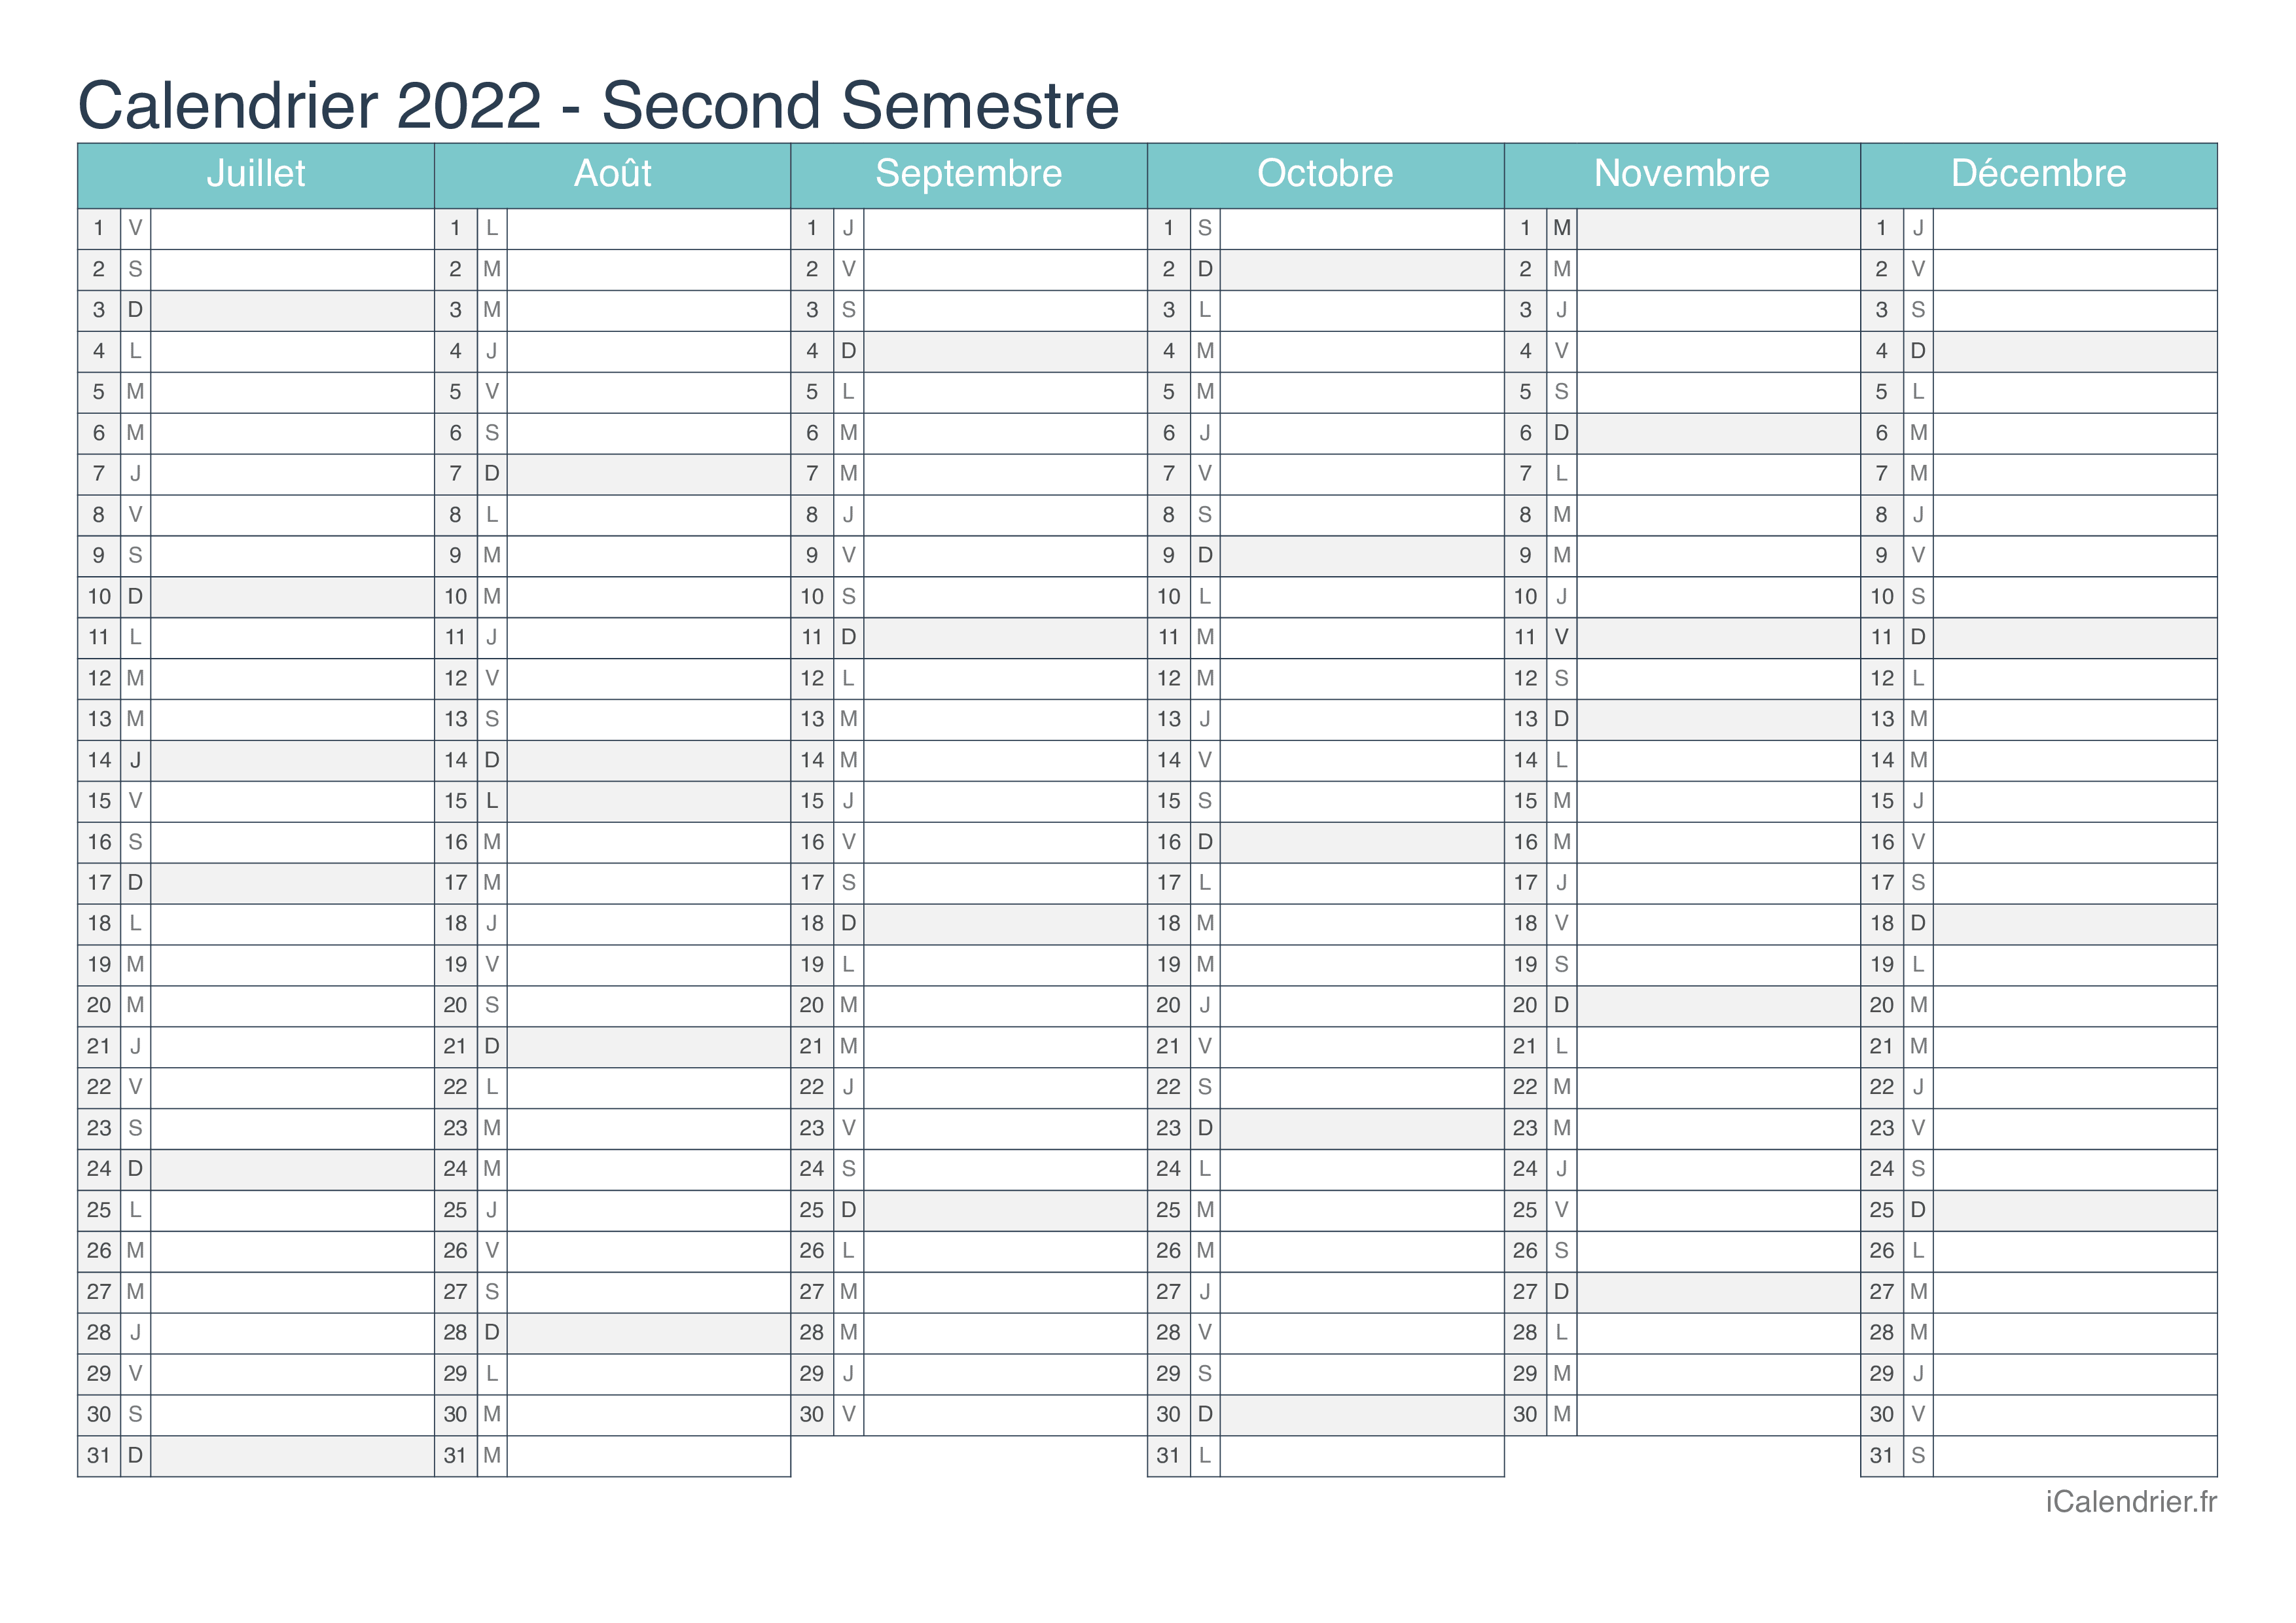 Calendrier 2022 2eme Semestre Calendrier 2022 à imprimer PDF et Excel   iCalendrier